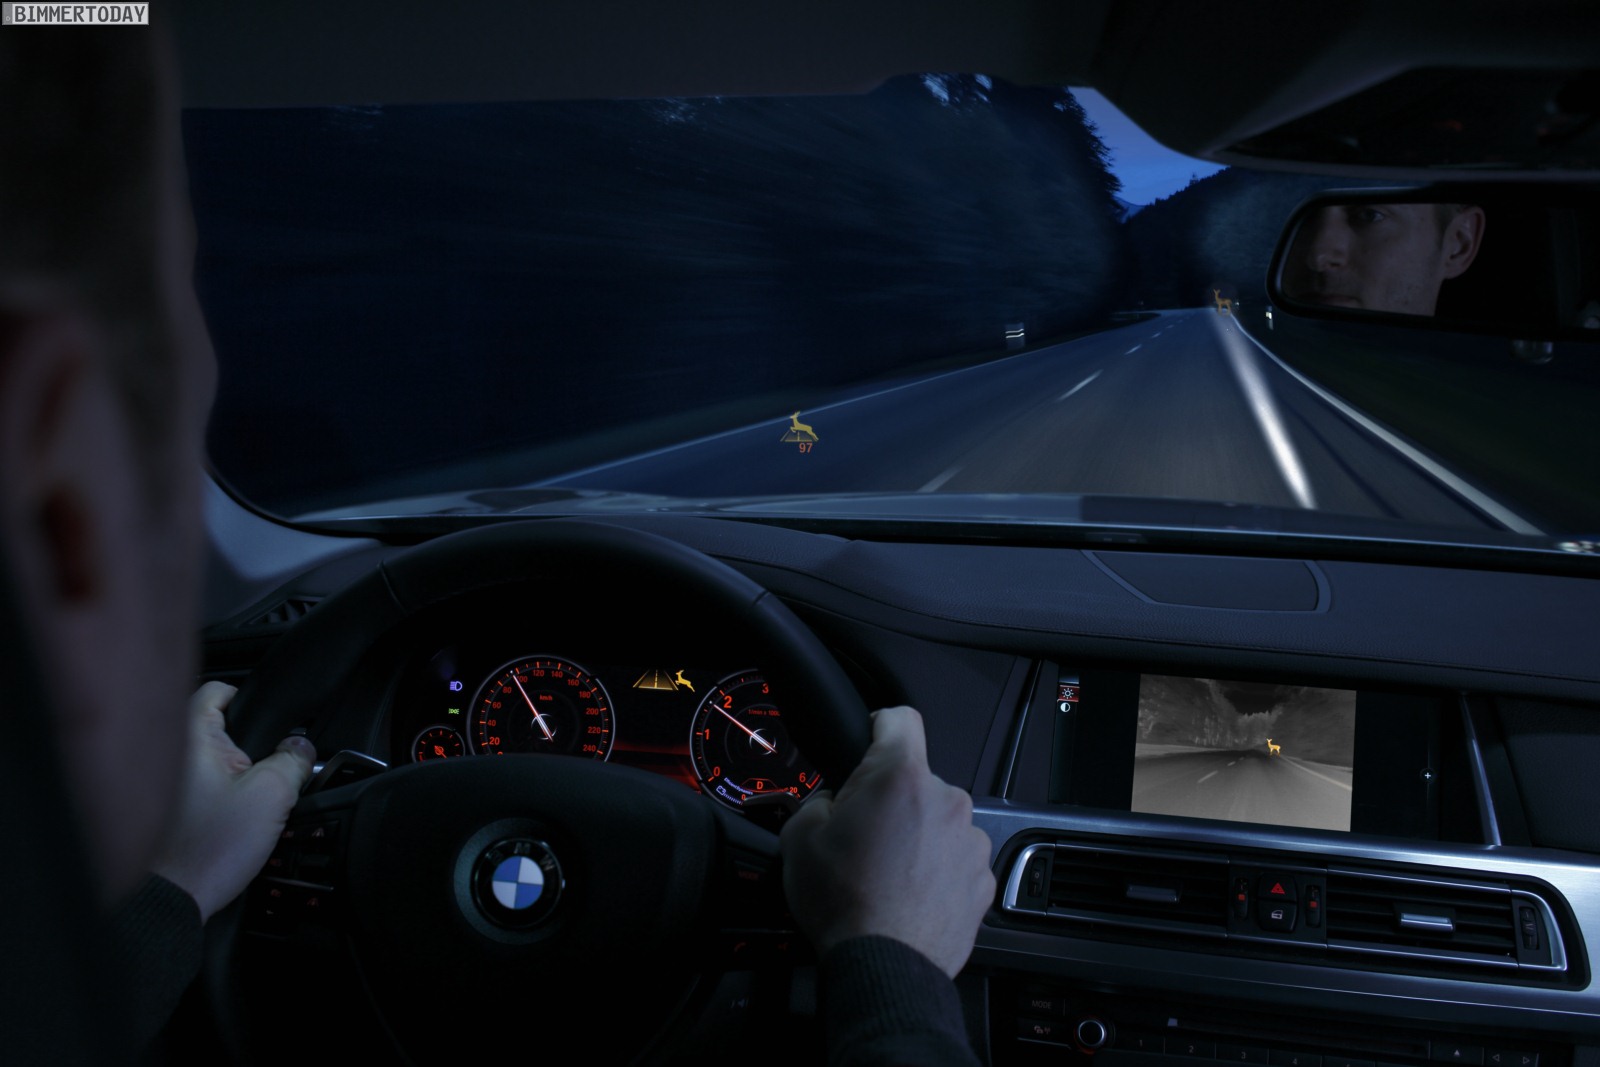 https://cdn.bimmertoday.de/wp-content/uploads/BMW-Night-Vision-Tier-Erkennung-Light-Spot-aktiv-anblinken-2013.jpg